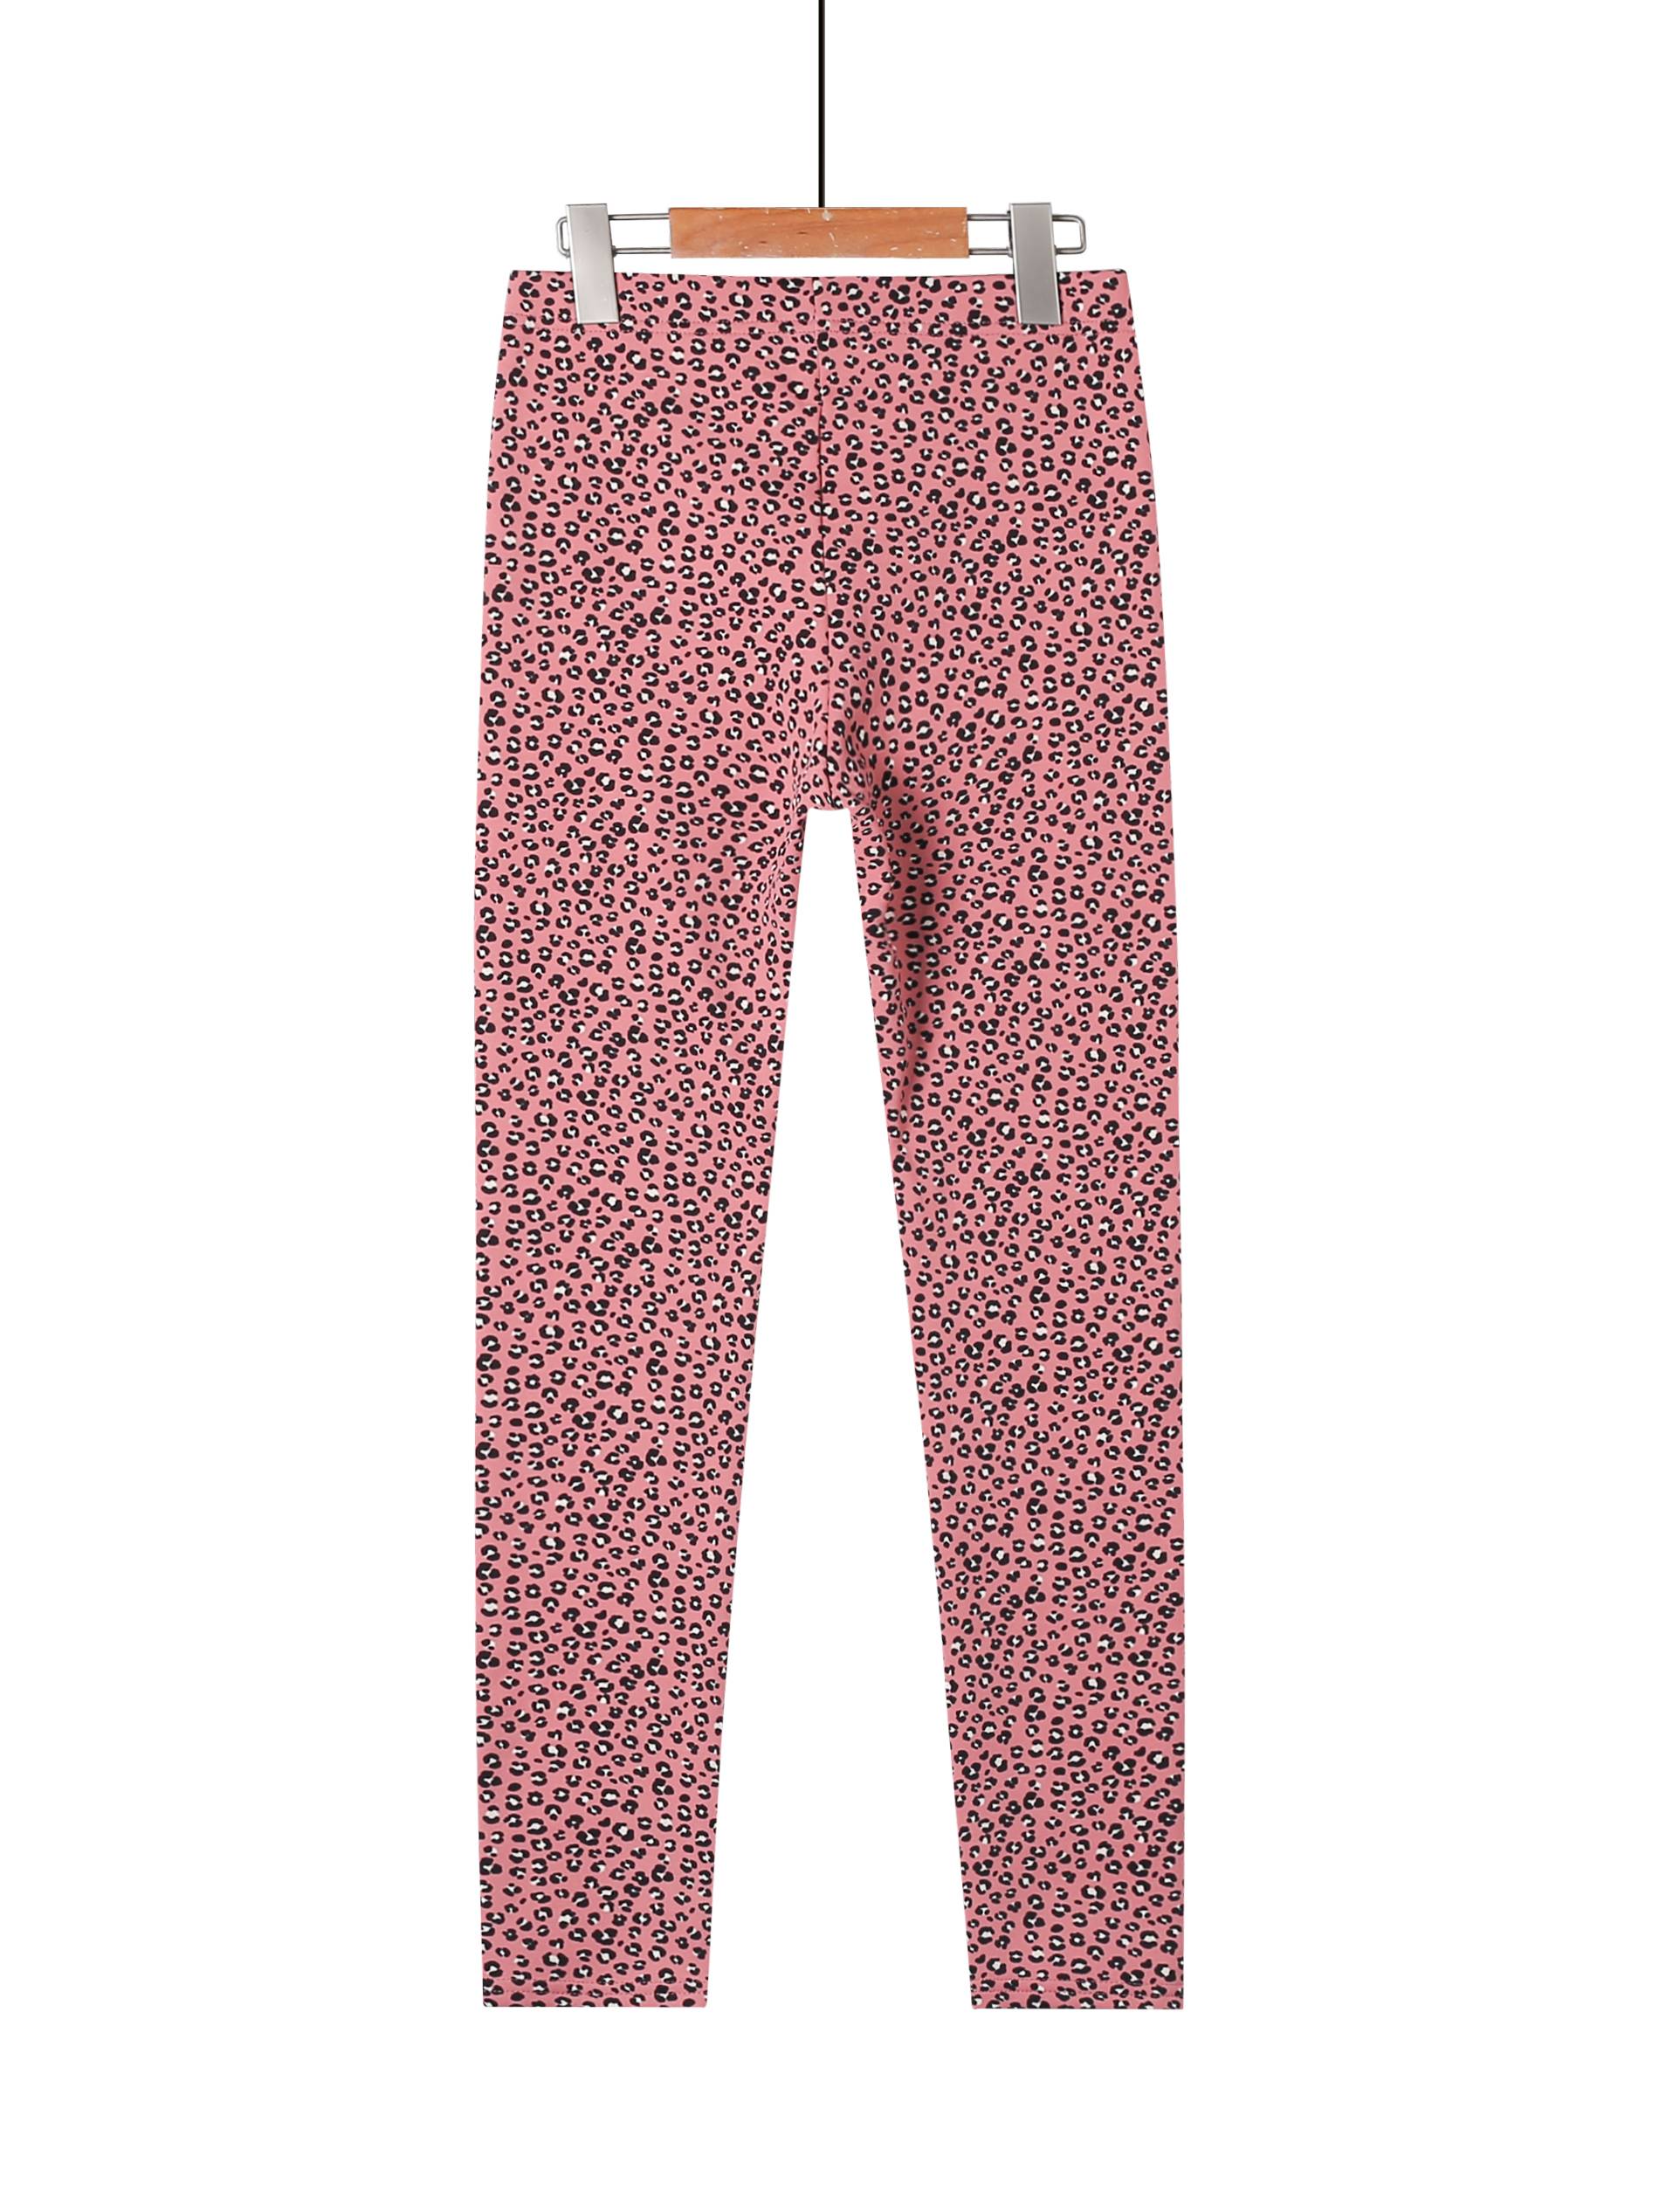 Girl\'s leggings-Leopard print